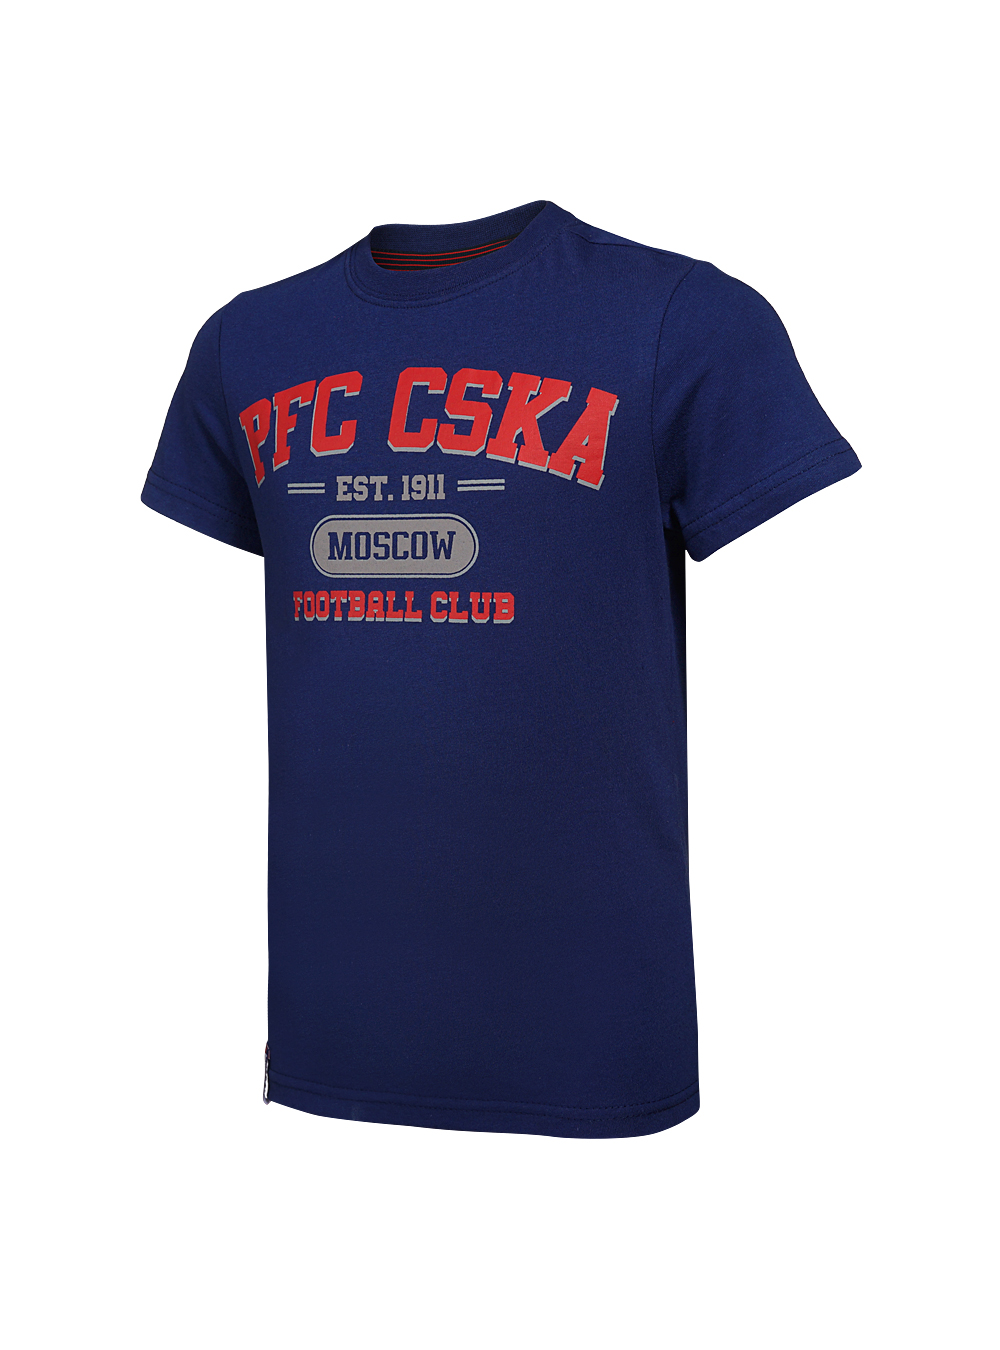 Футболка детская  PFC CSKA Moscow синяя (140) ПФК ЦСКА CSK18031